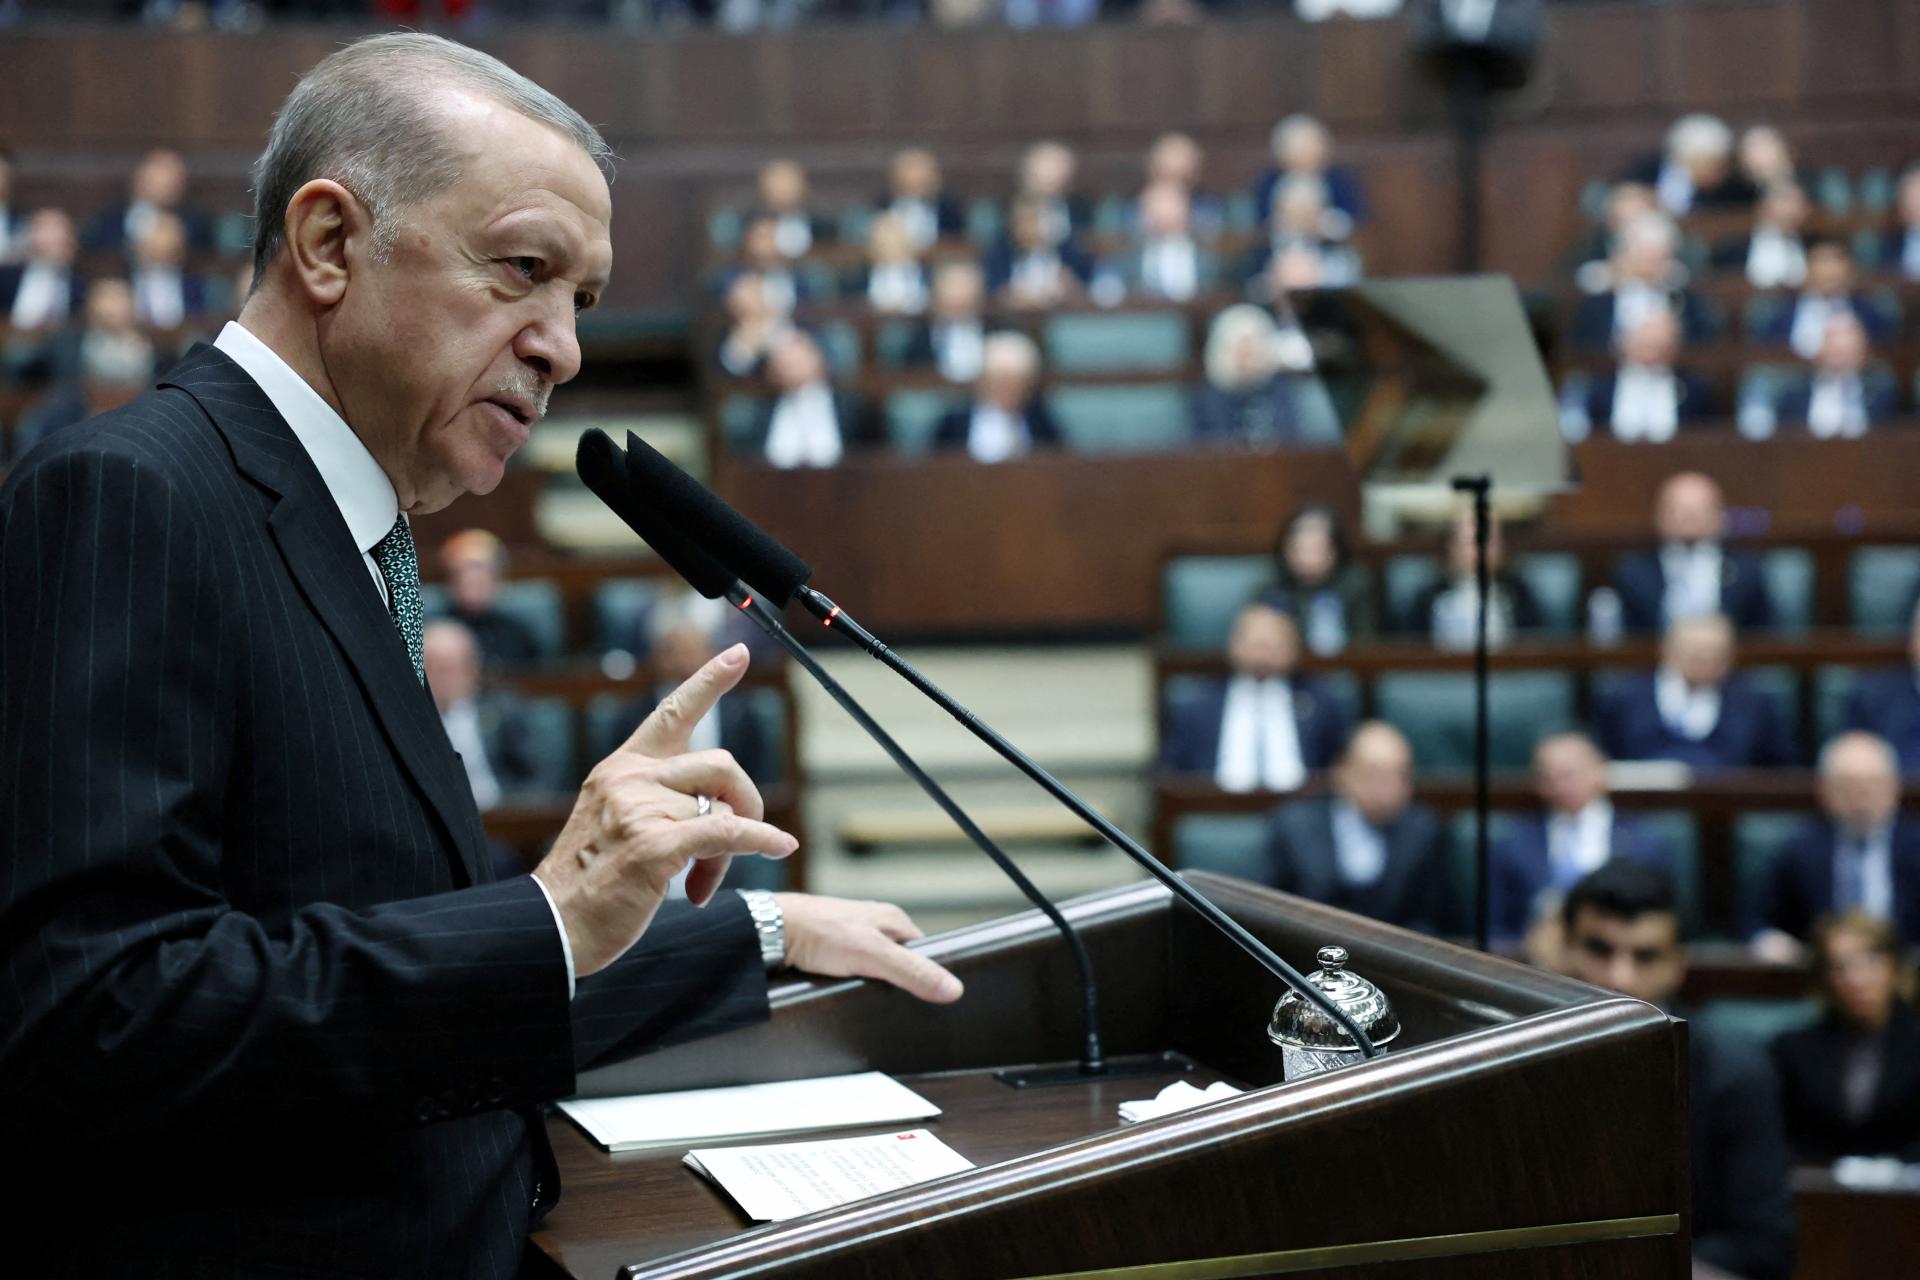 Turci si vo voľbách budú vyberať z 36 politických strán, vrátane strany, ktorá čelí zákazu kvôli terorizmu